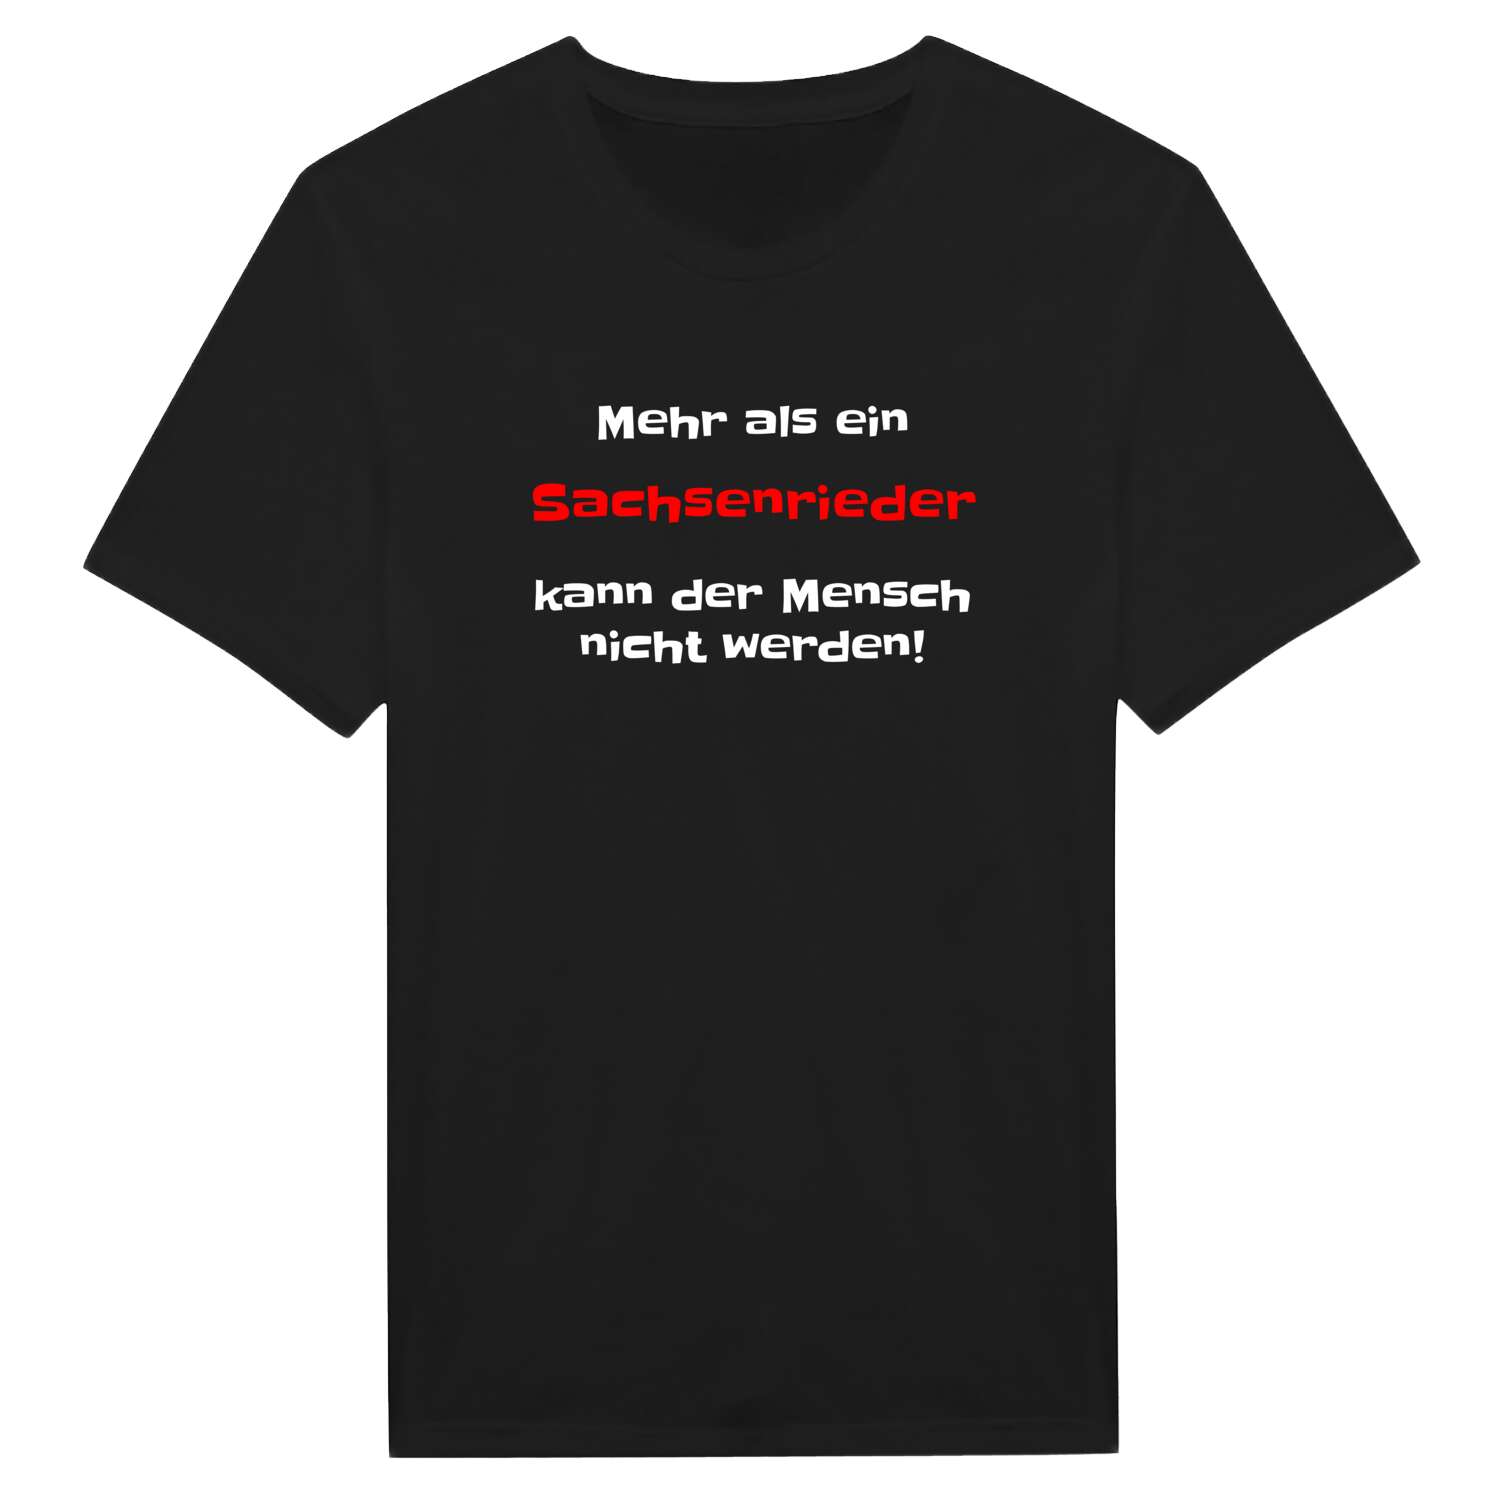 Sachsenried T-Shirt »Mehr als ein«